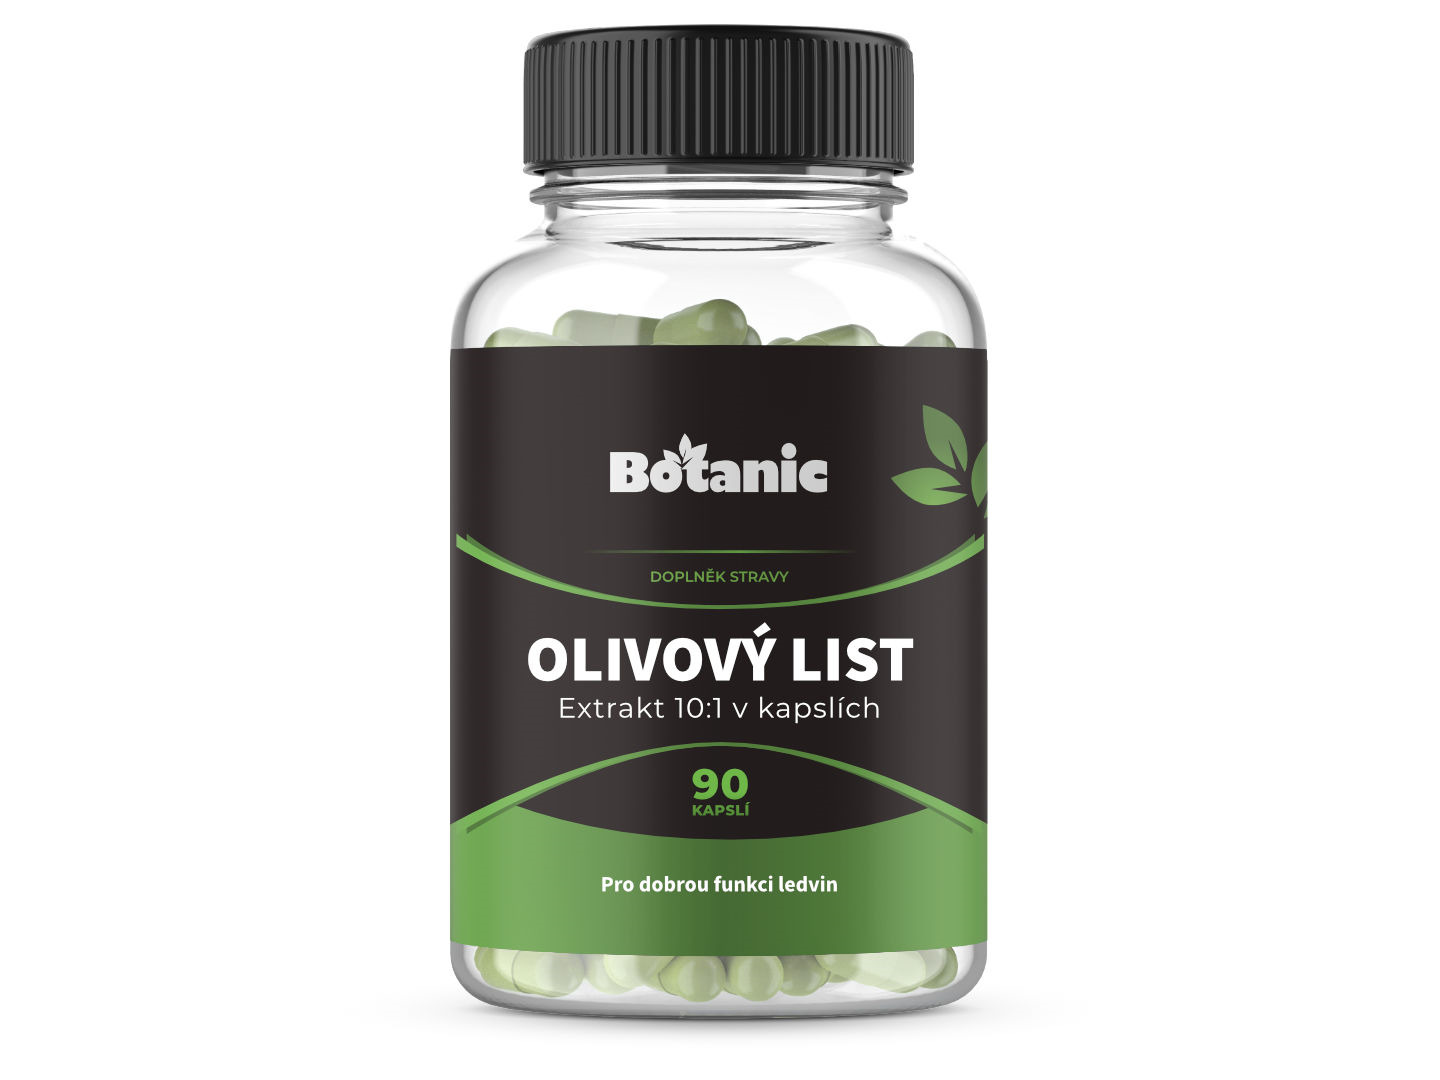 Botanic Olivový list - Extrakt 10:1 v kapslích 90kap.